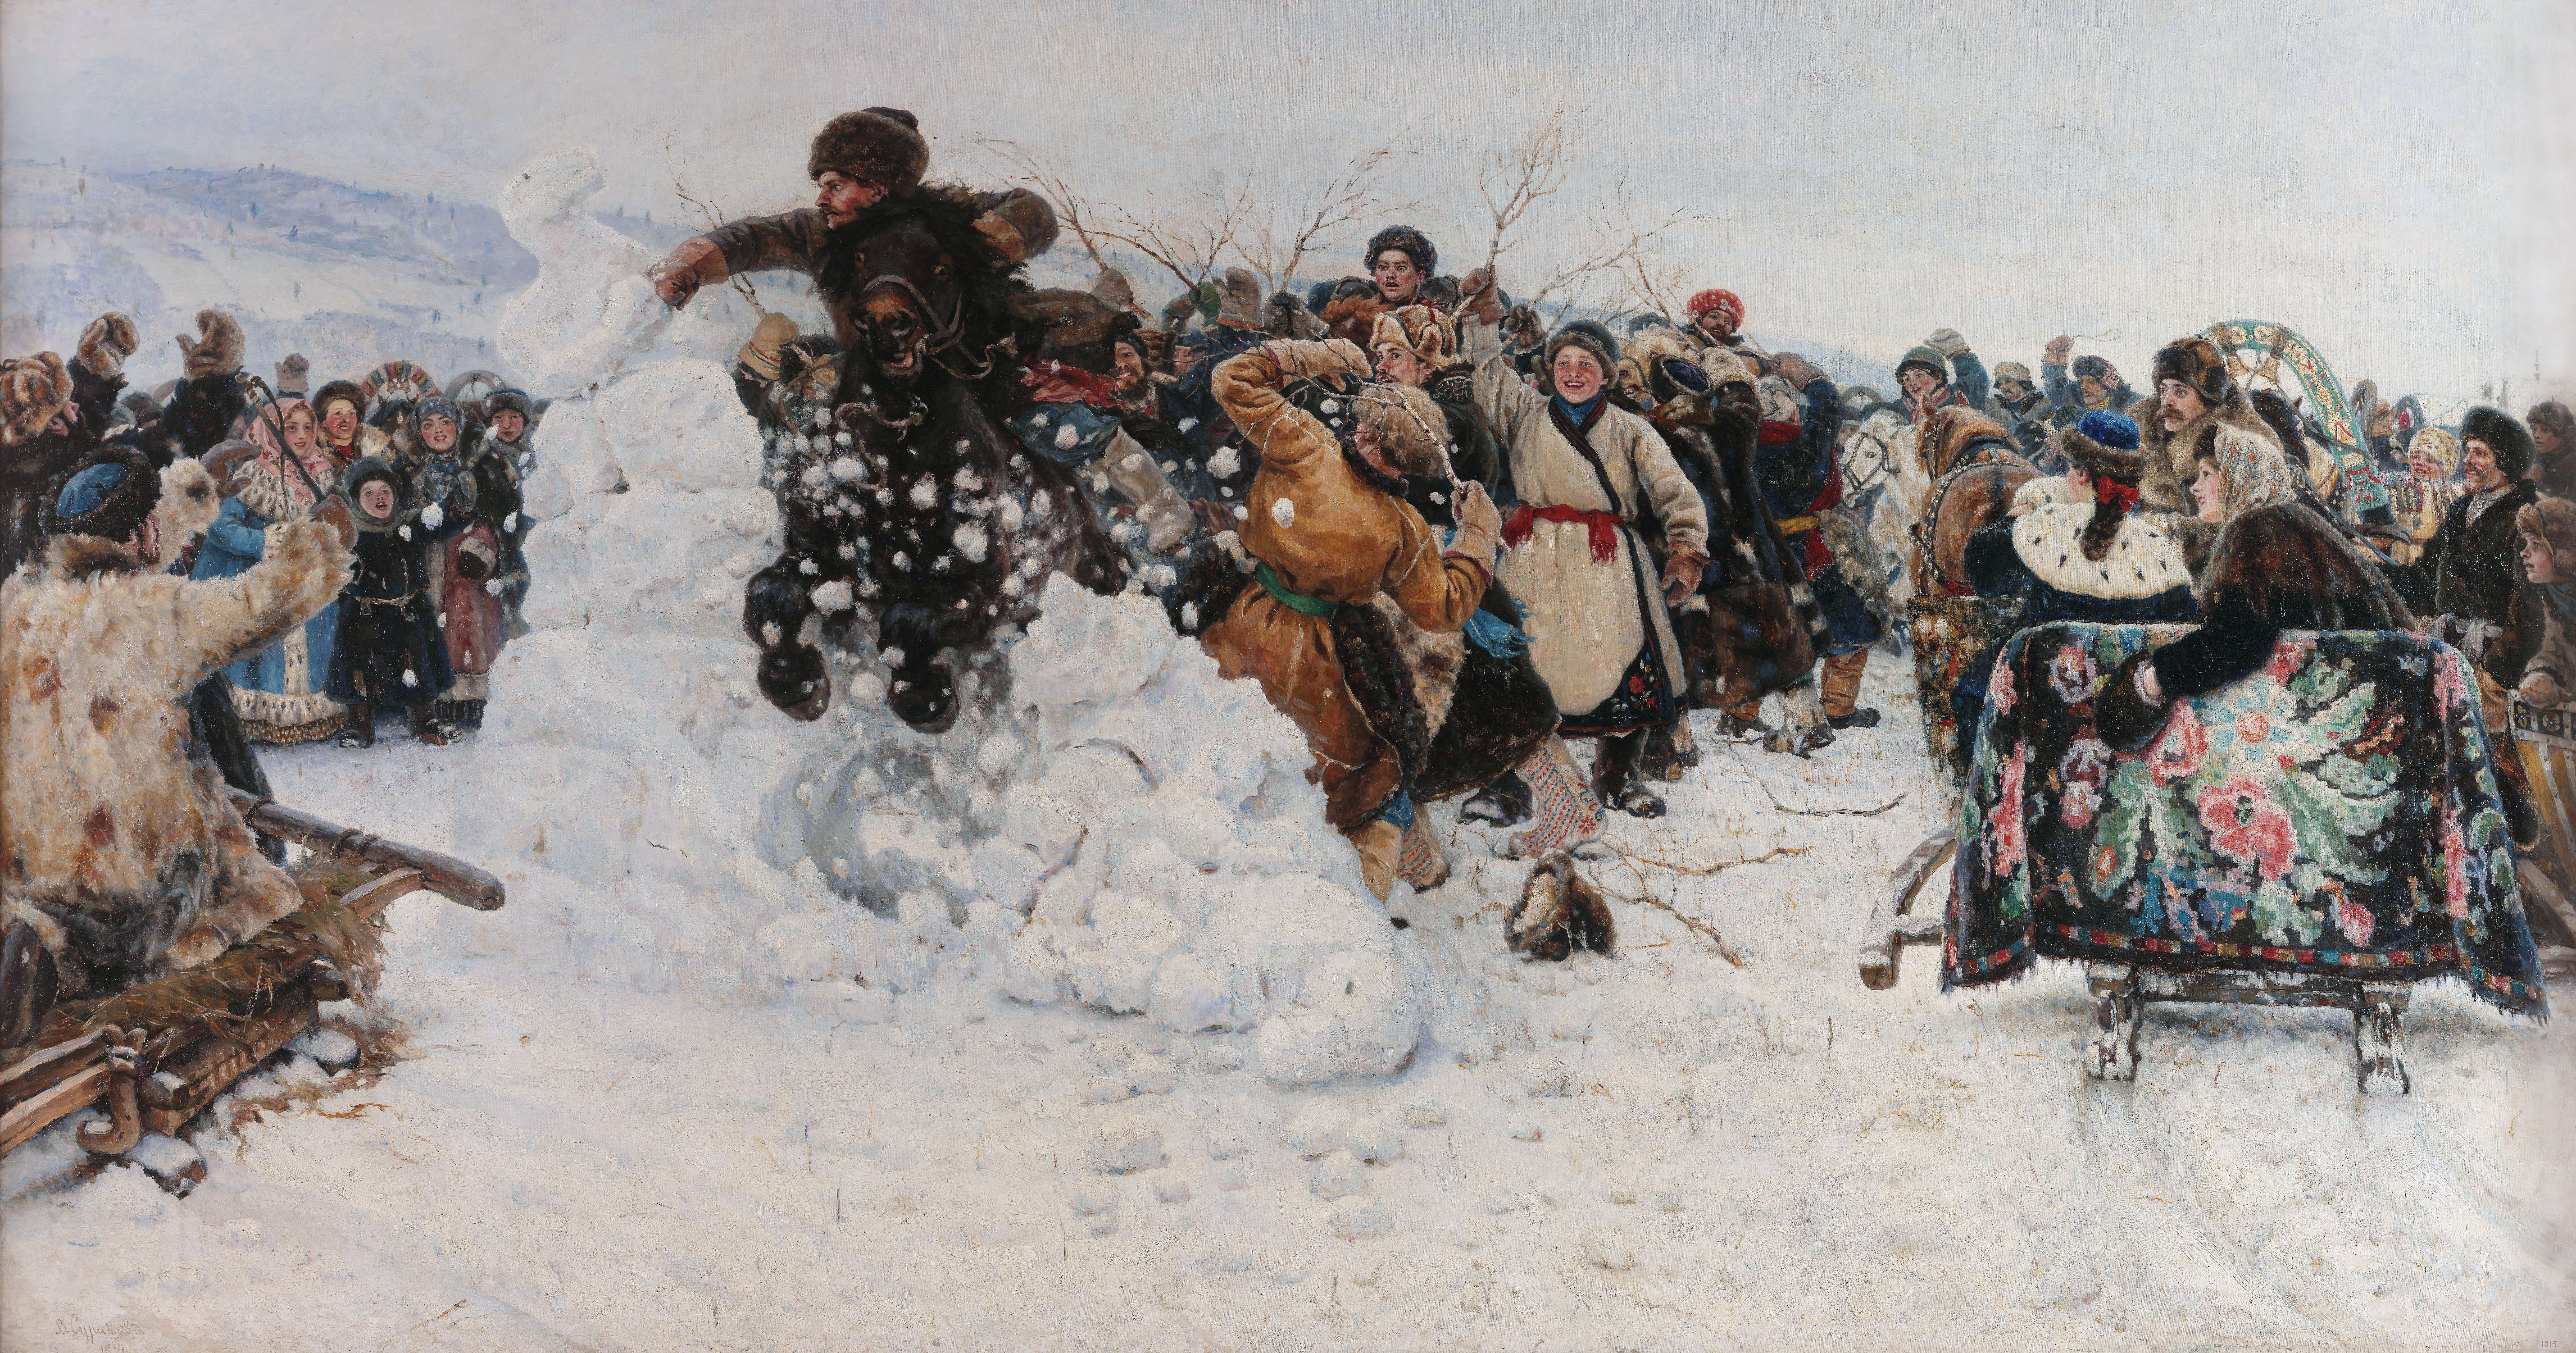 Суриков. Взятие снежного городка. 1891